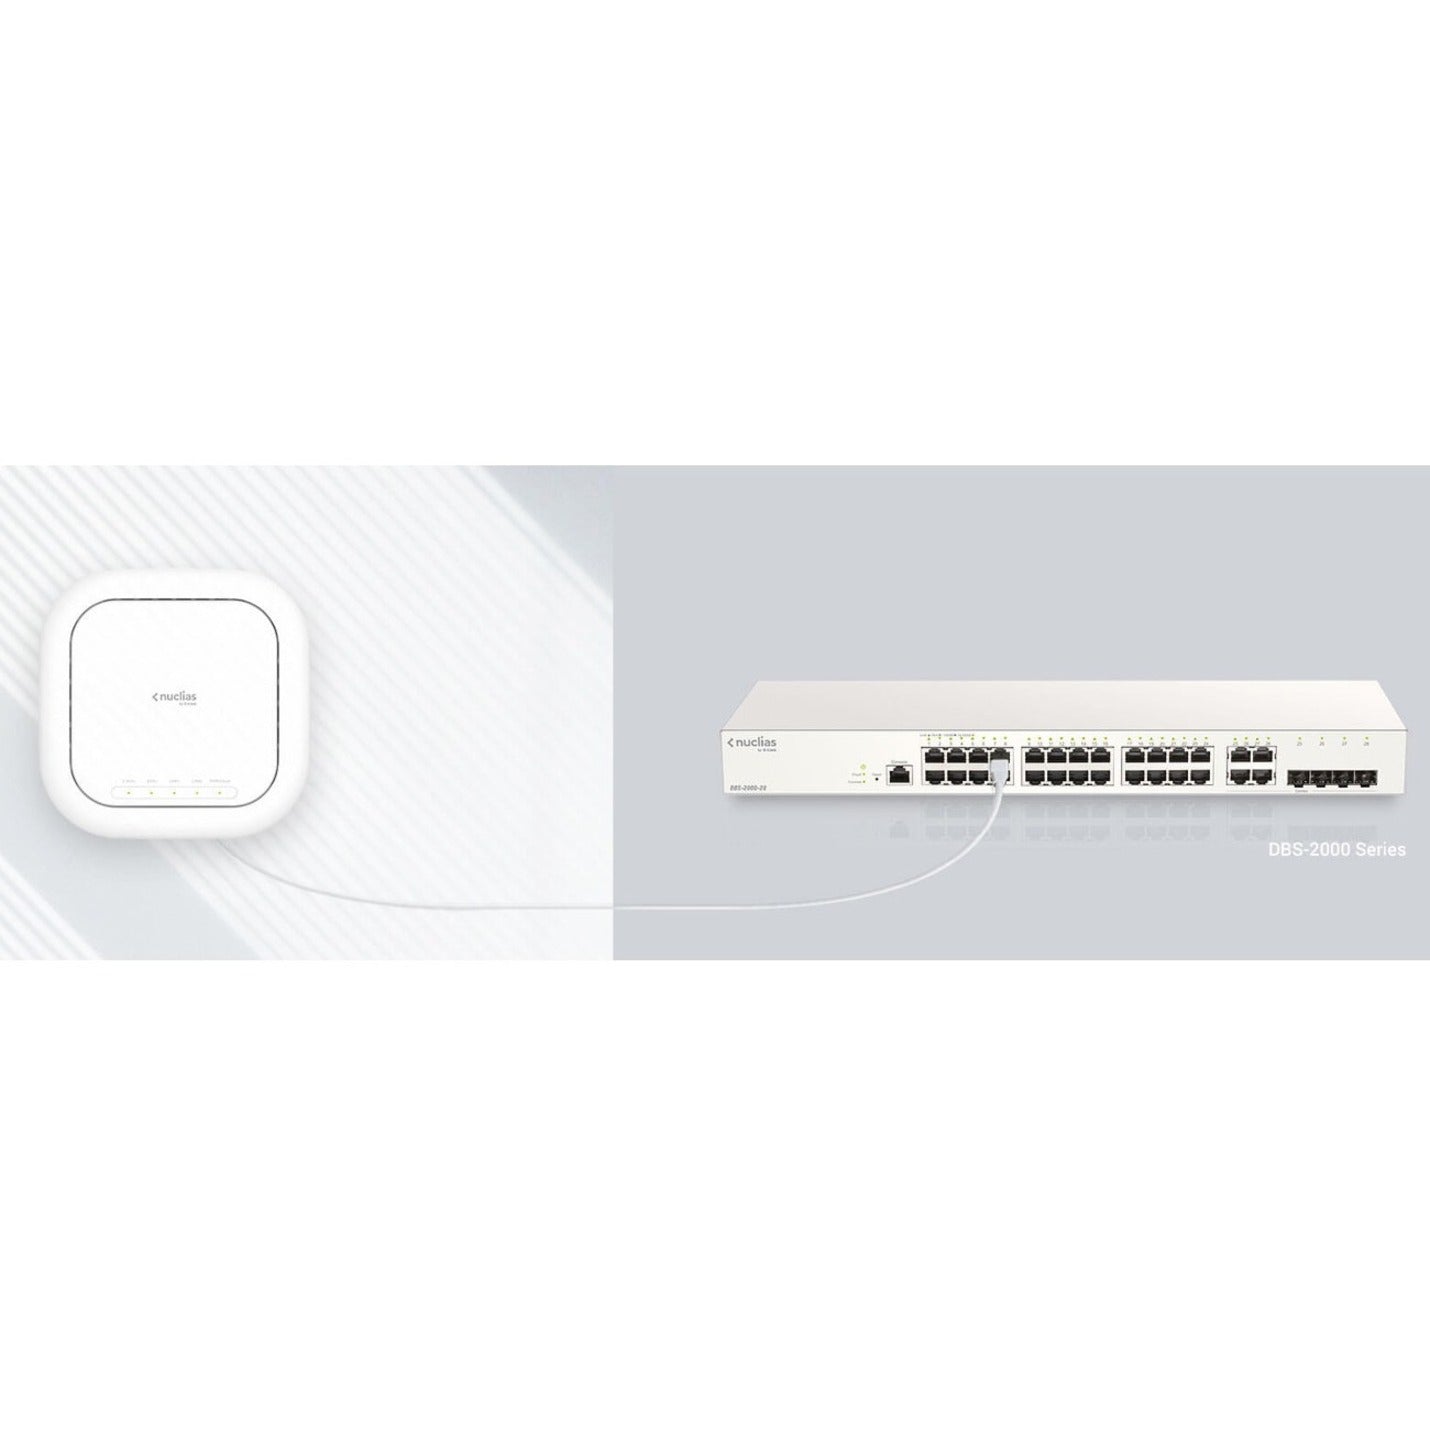 D-Link DBA-2720P Punto de acceso en la nube de negocios Nuclias AC2200 Wave2 Ethernet Gigabit Banda Tri 2.08 Gbit/s. Marca: D-Link